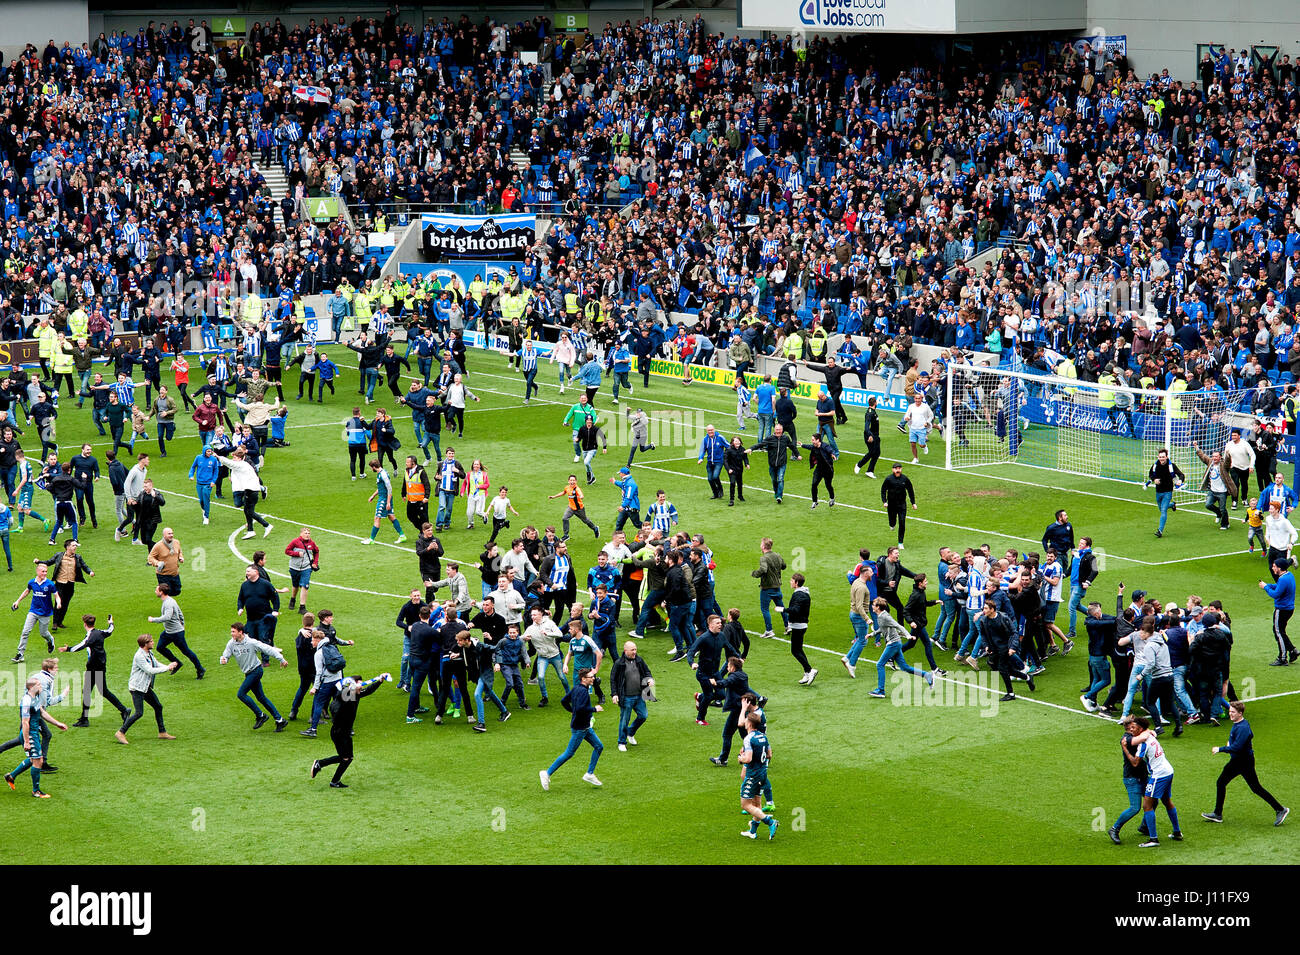 Los fans de la Brighton y Hove Albion football club invaden el tono para celebrar el ascenso a la Premier League en el estadio de Amex, el 17 de abril de 2017. Foto de stock